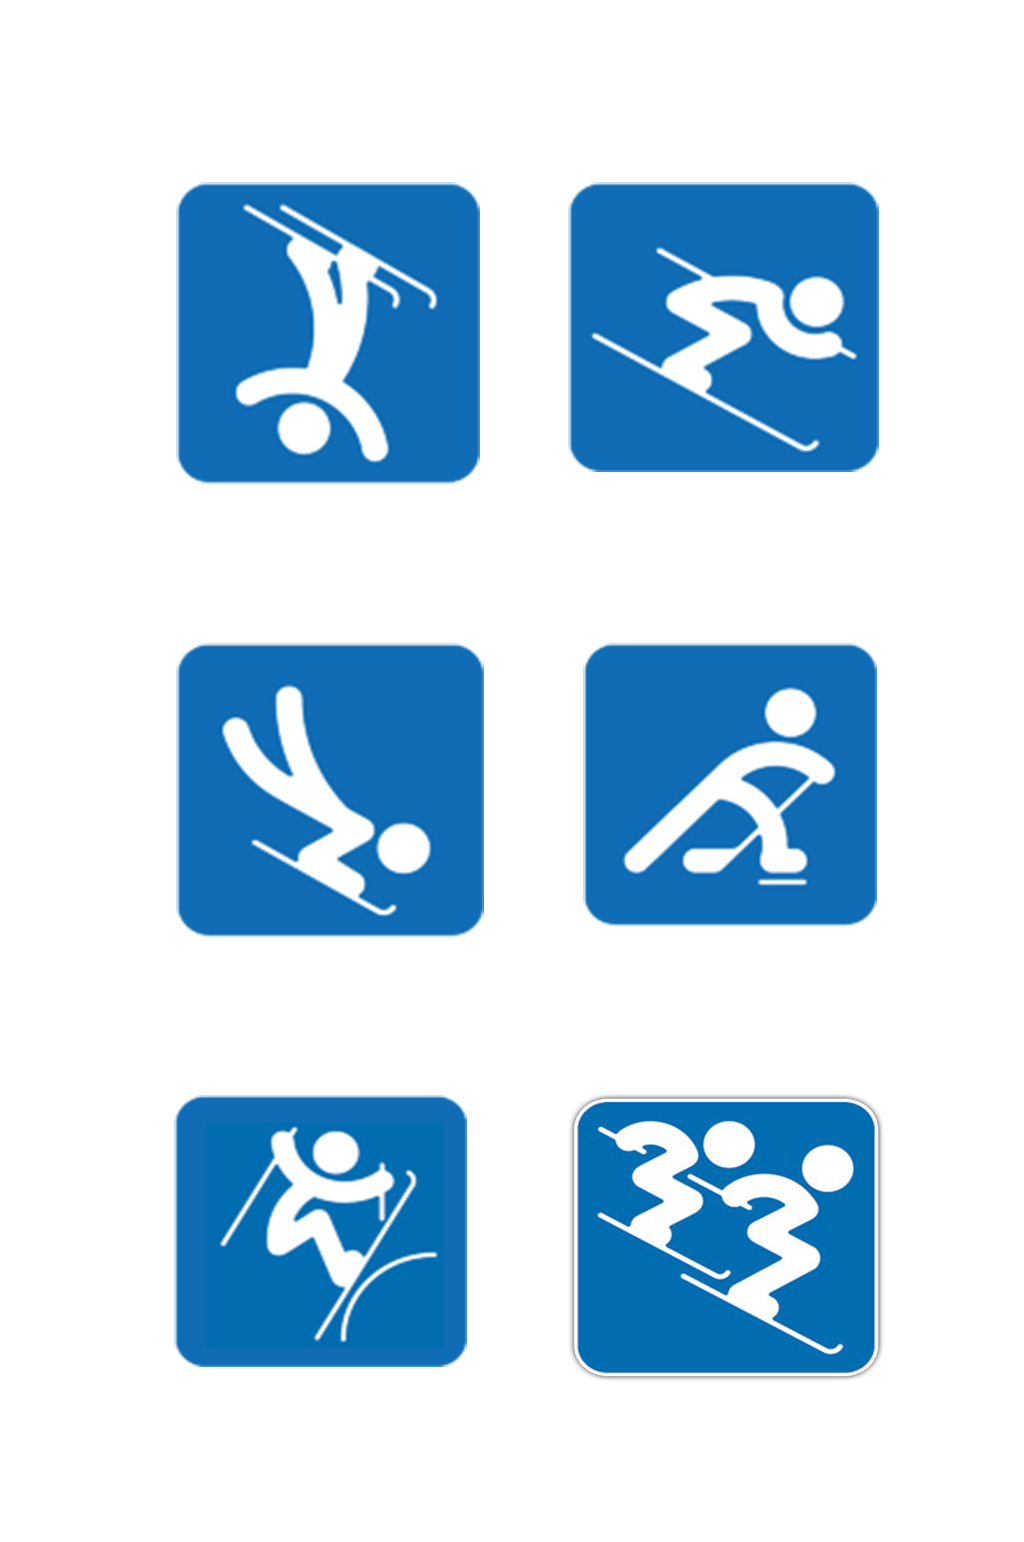 冬奥会项目滑雪图标图片